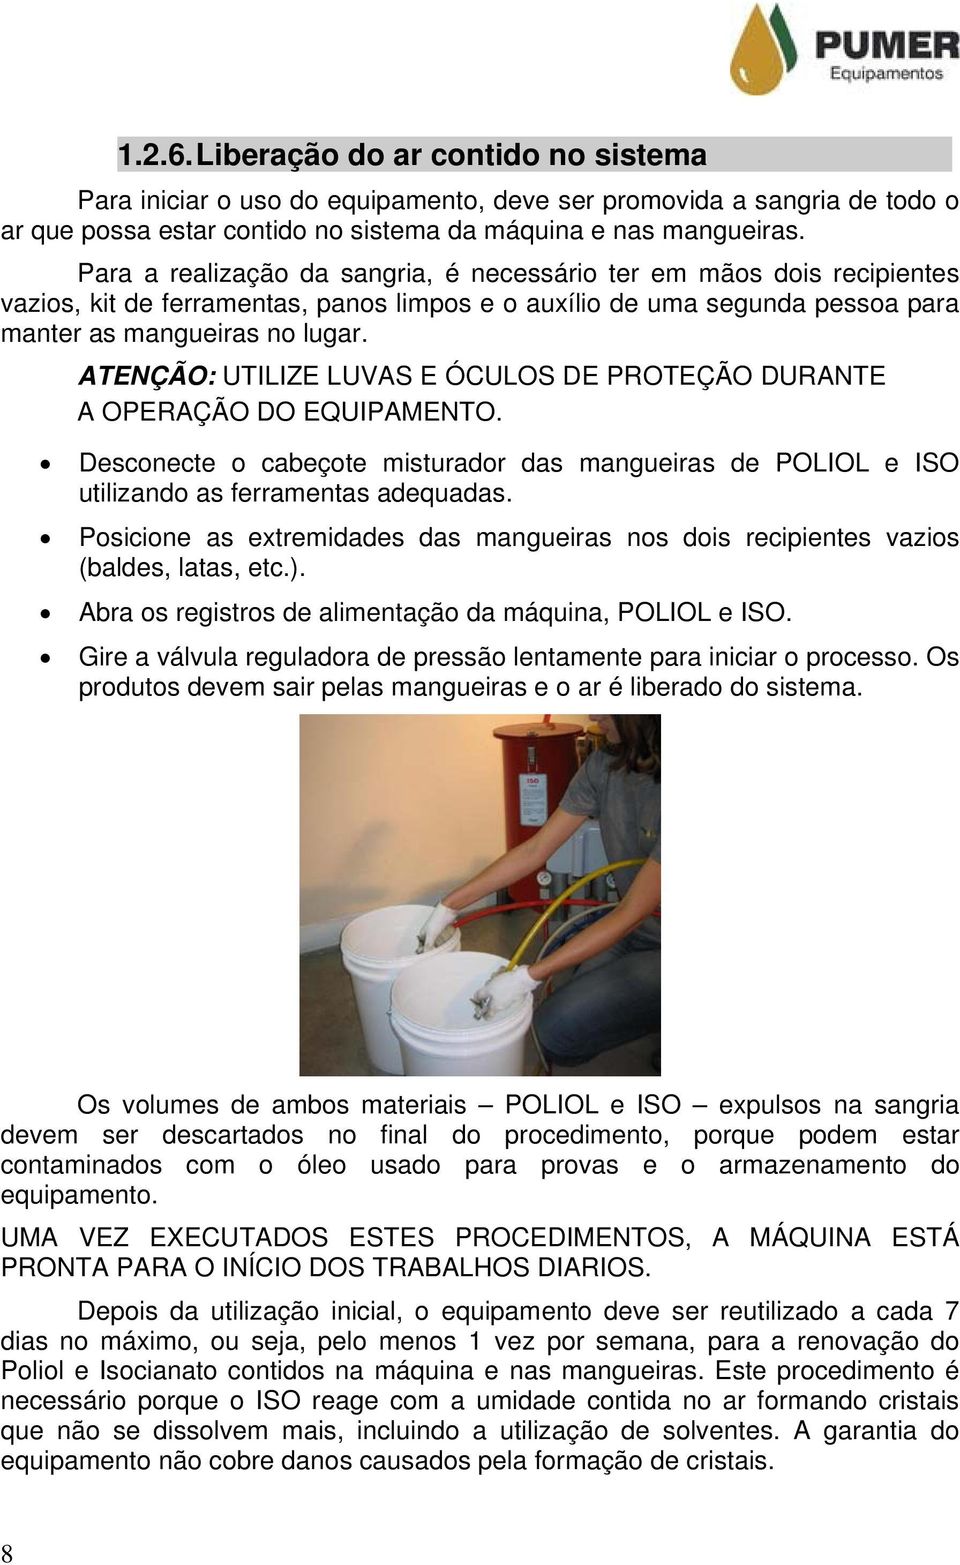 ATENÇÃO: UTILIZE LUVAS E ÓCULOS DE PROTEÇÃO DURANTE A OPERAÇÃO DO EQUIPAMENTO. Desconecte o cabeçote misturador das mangueiras de POLIOL e ISO utilizando as ferramentas adequadas.